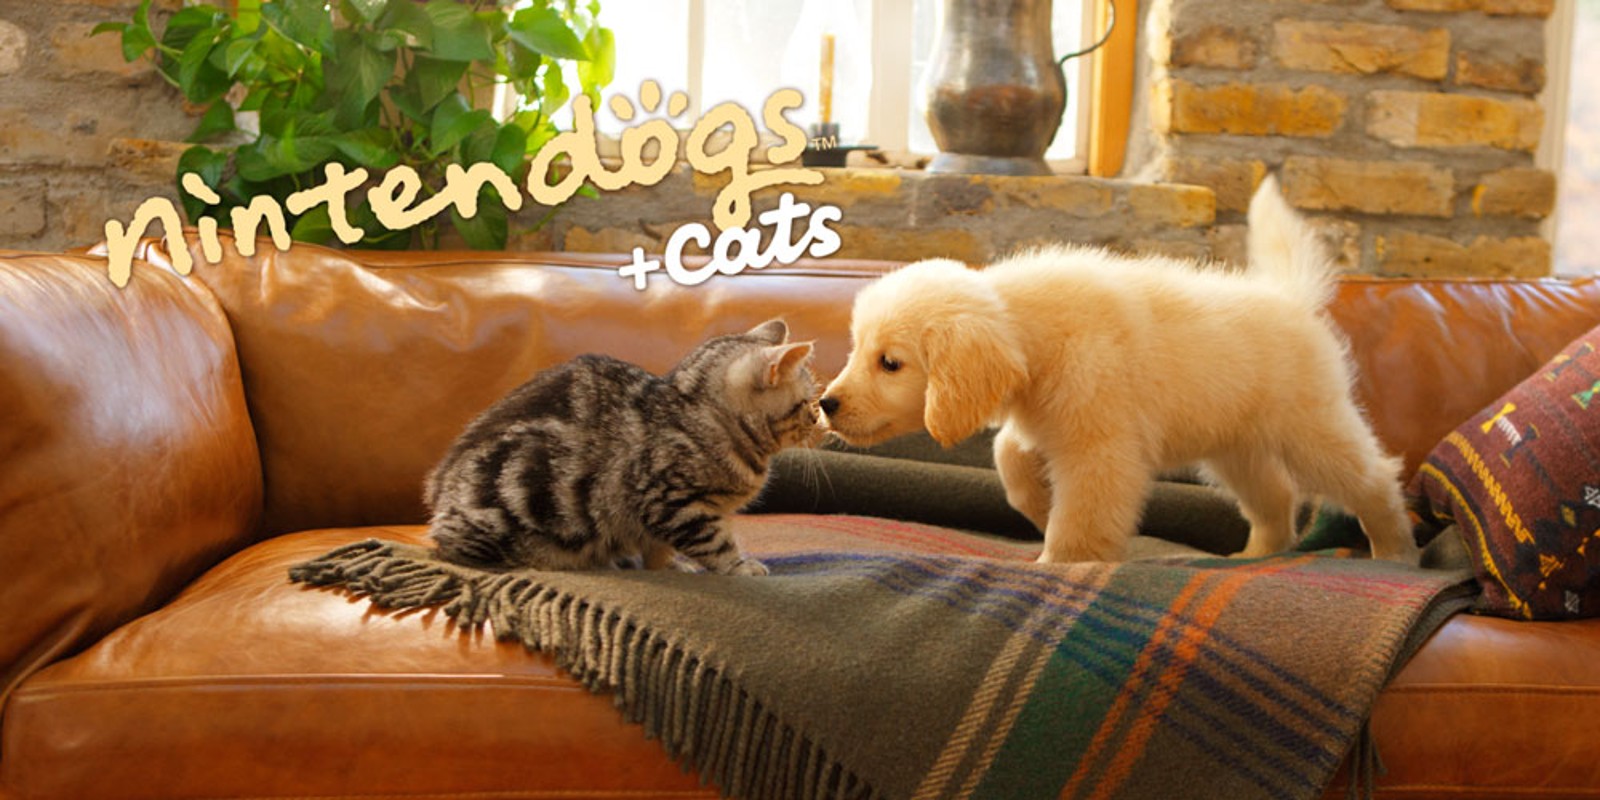 nintendogs + cats: Golden retriever & nieuwe vrienden